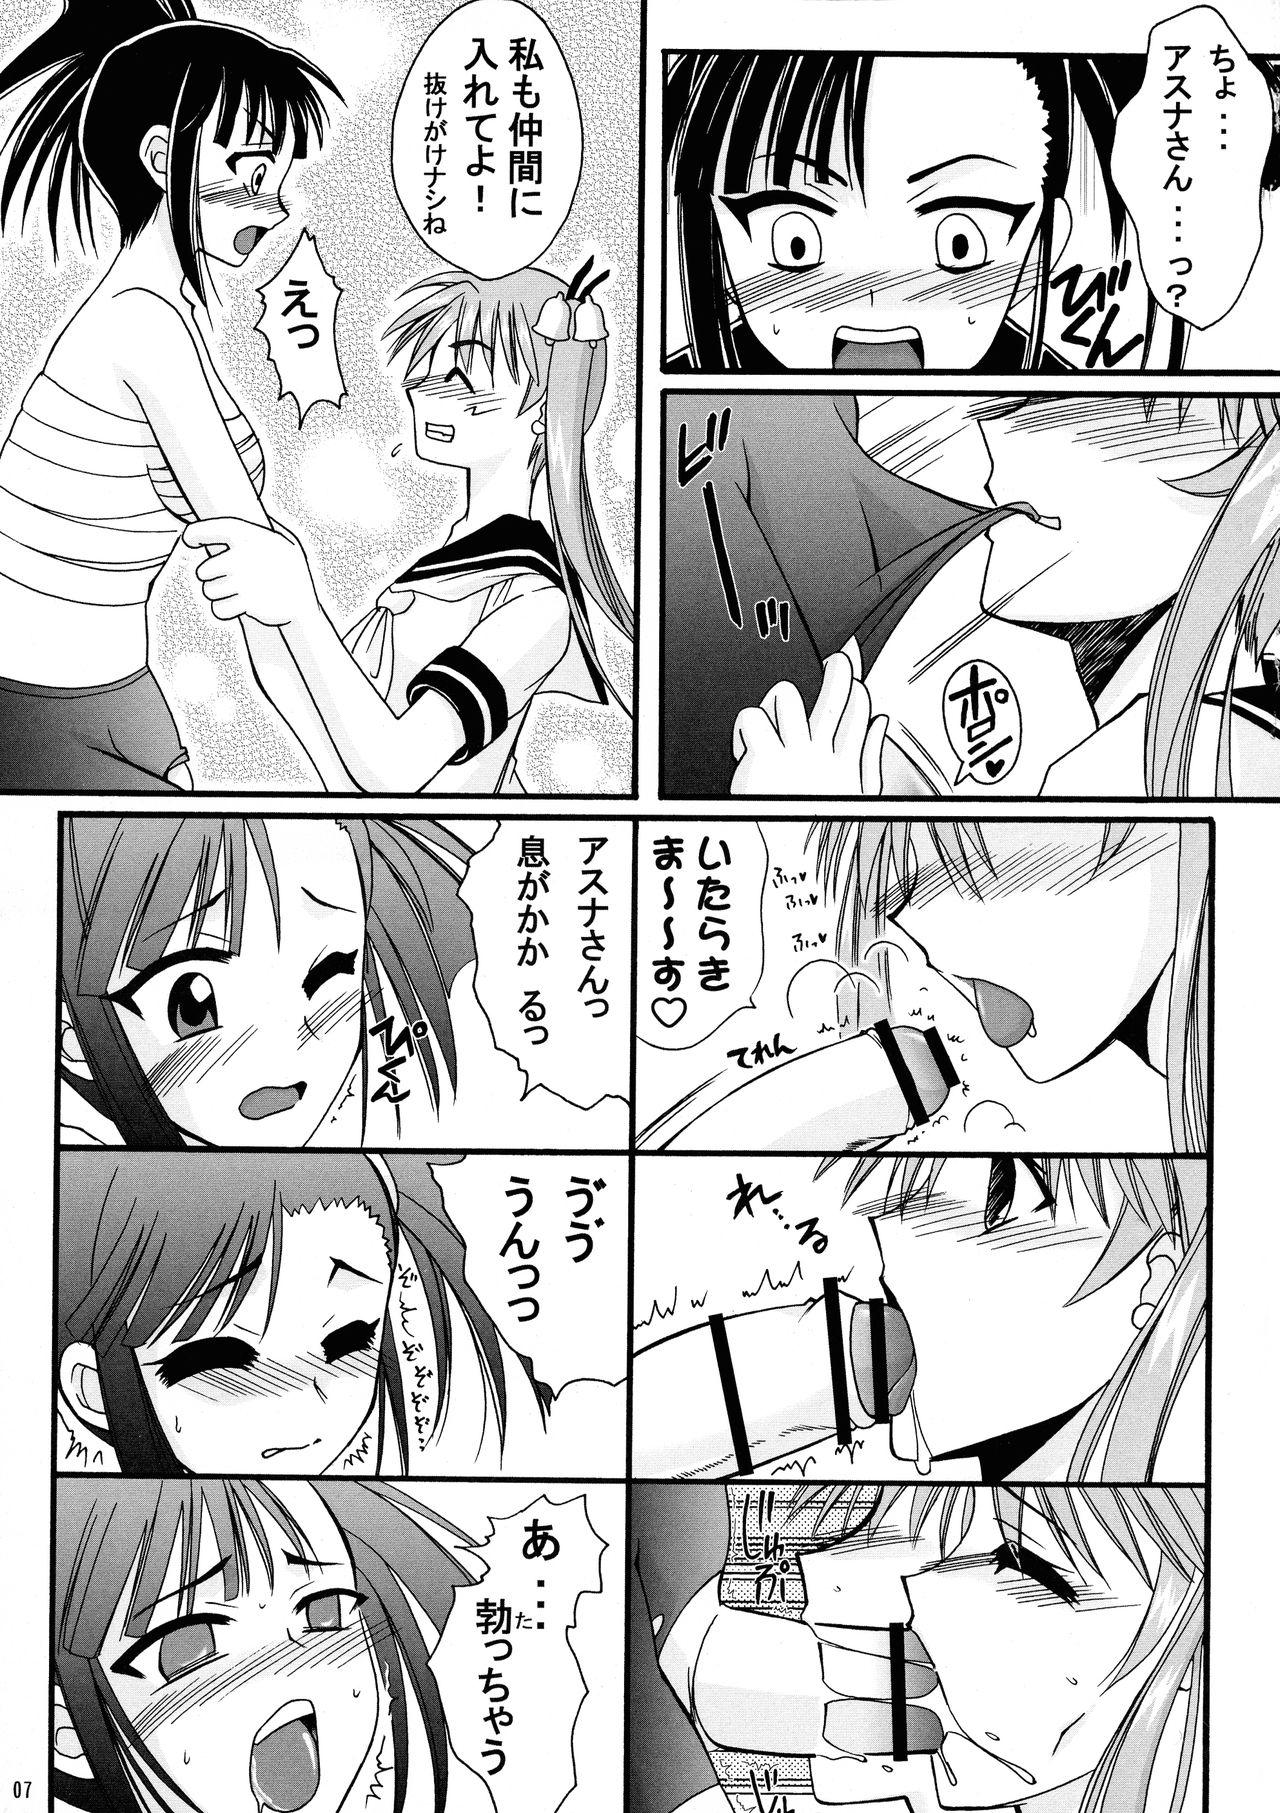 Cheating Mahou Seito Asuna x Setsuna! - Mahou sensei negima Strip - Page 7